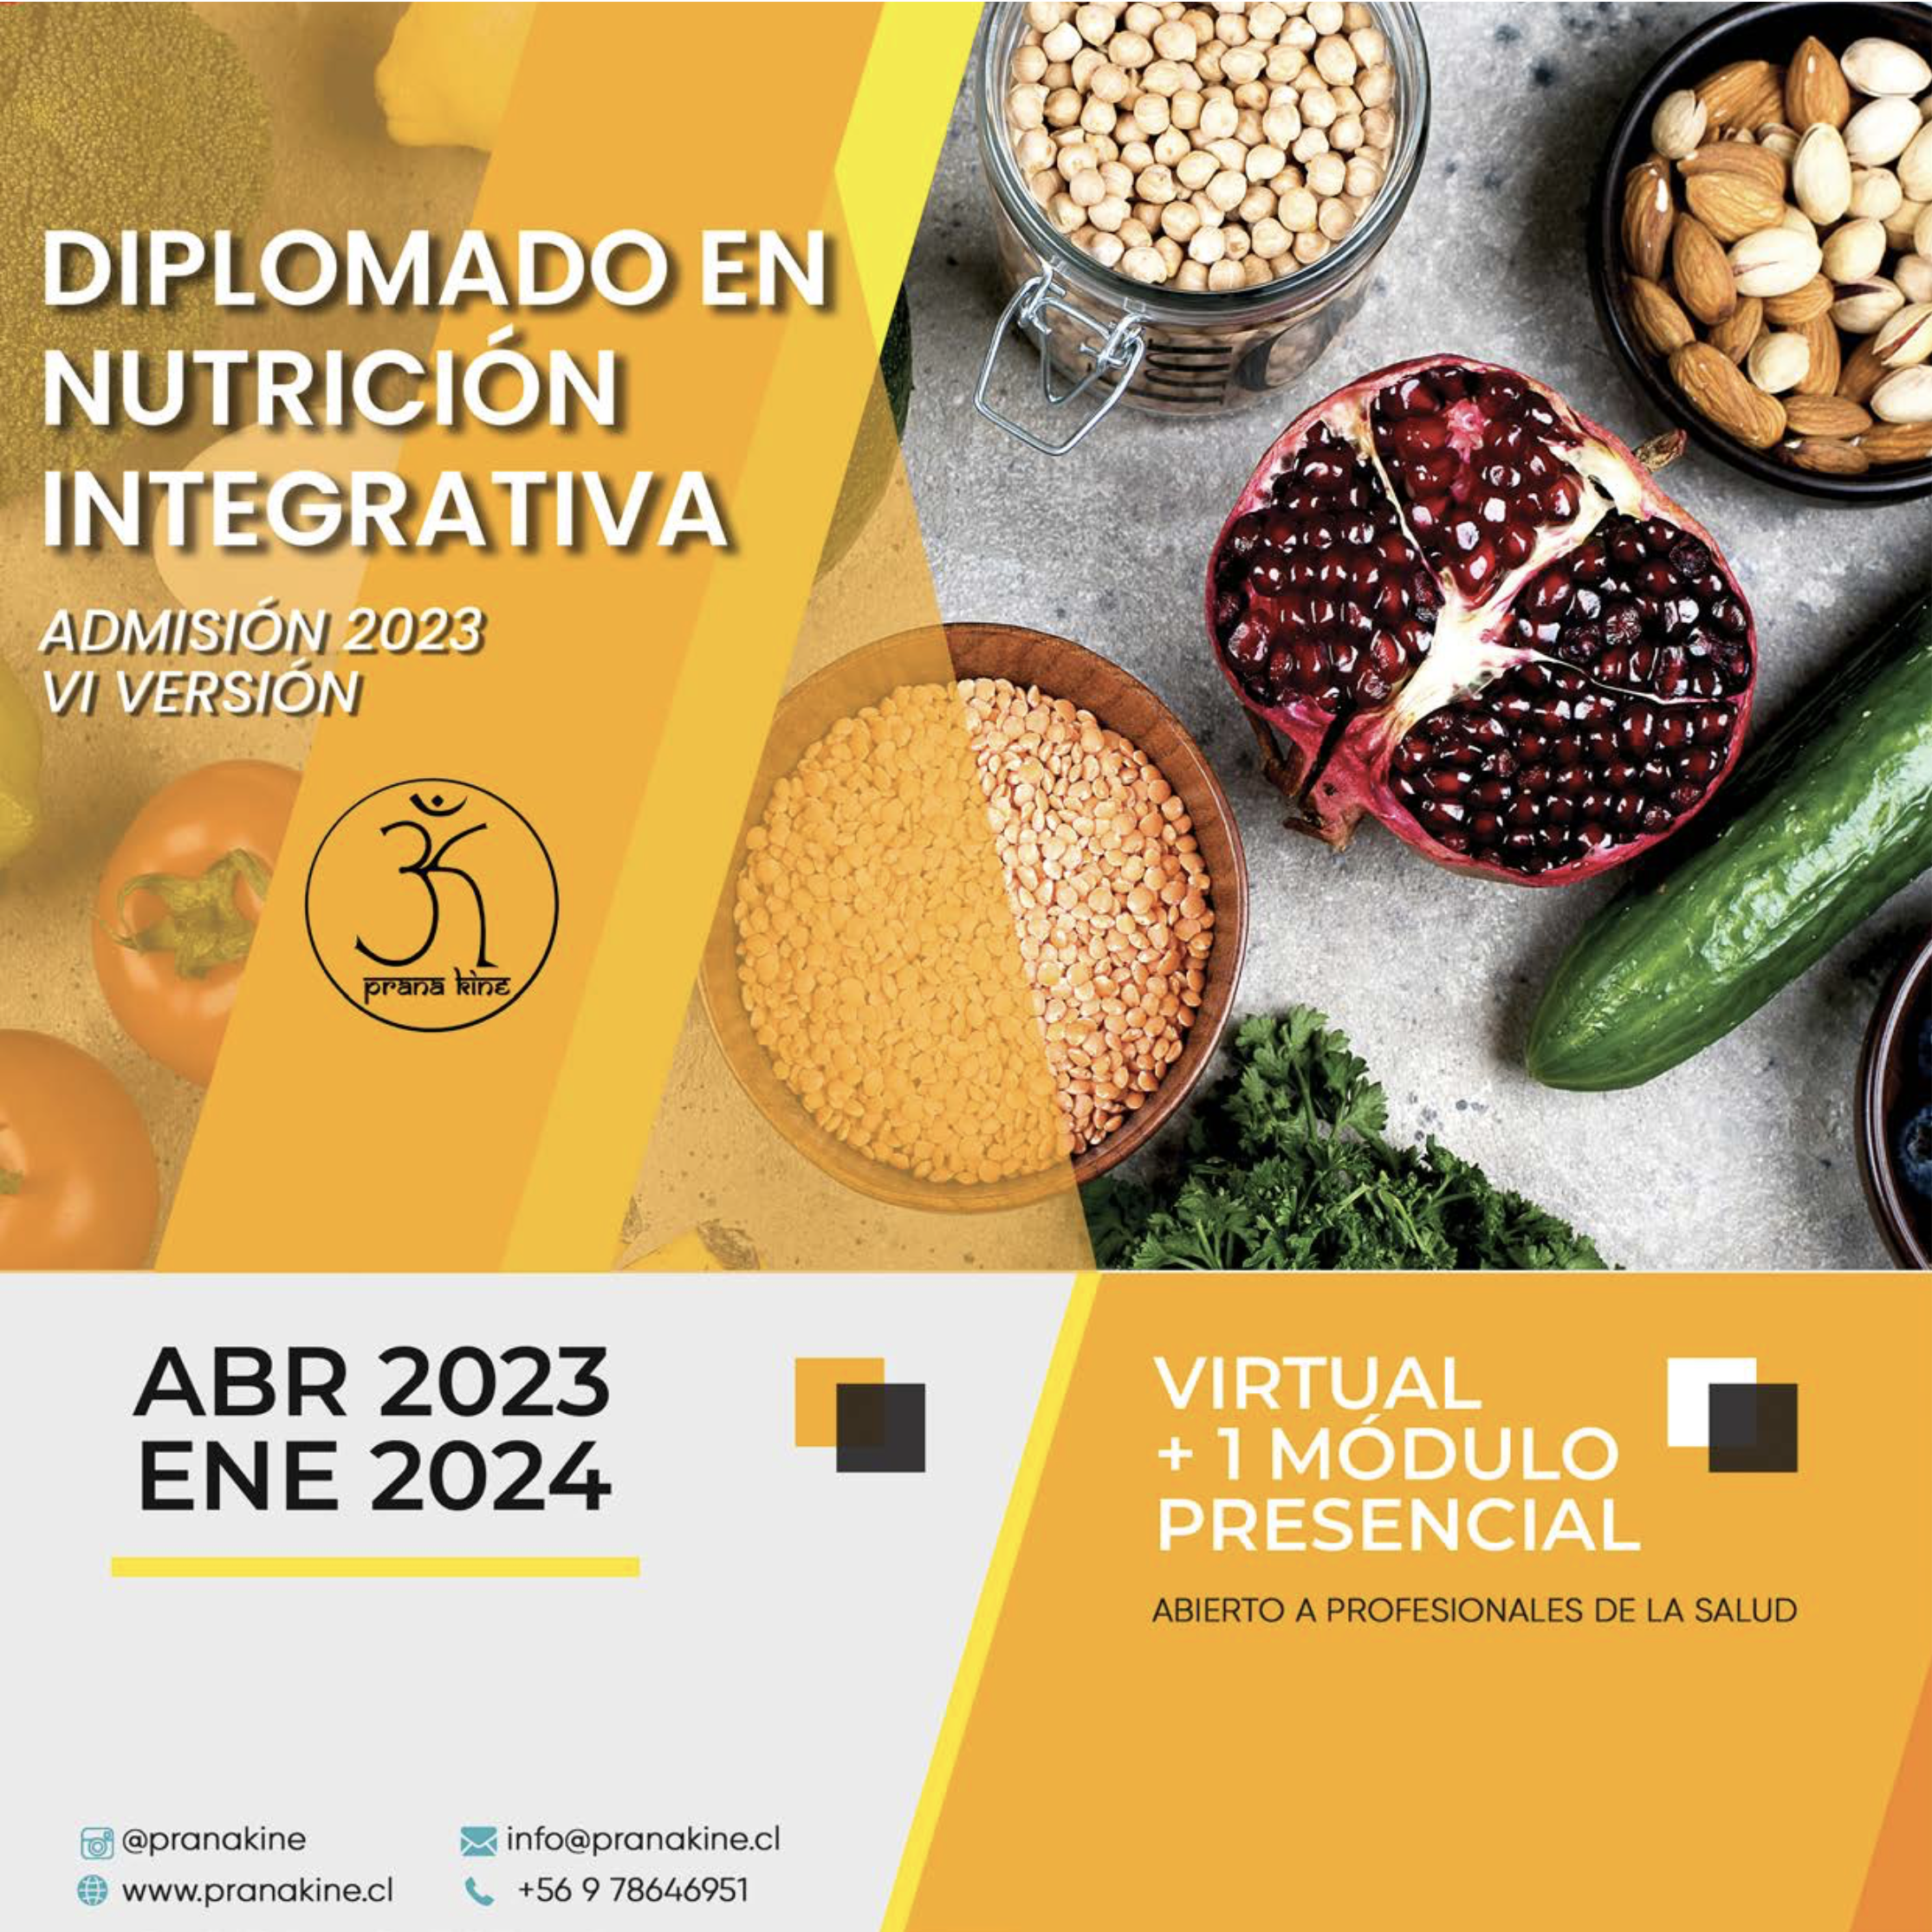 Diplomado en Nutrición Integrativa 2023 (VI Versión)